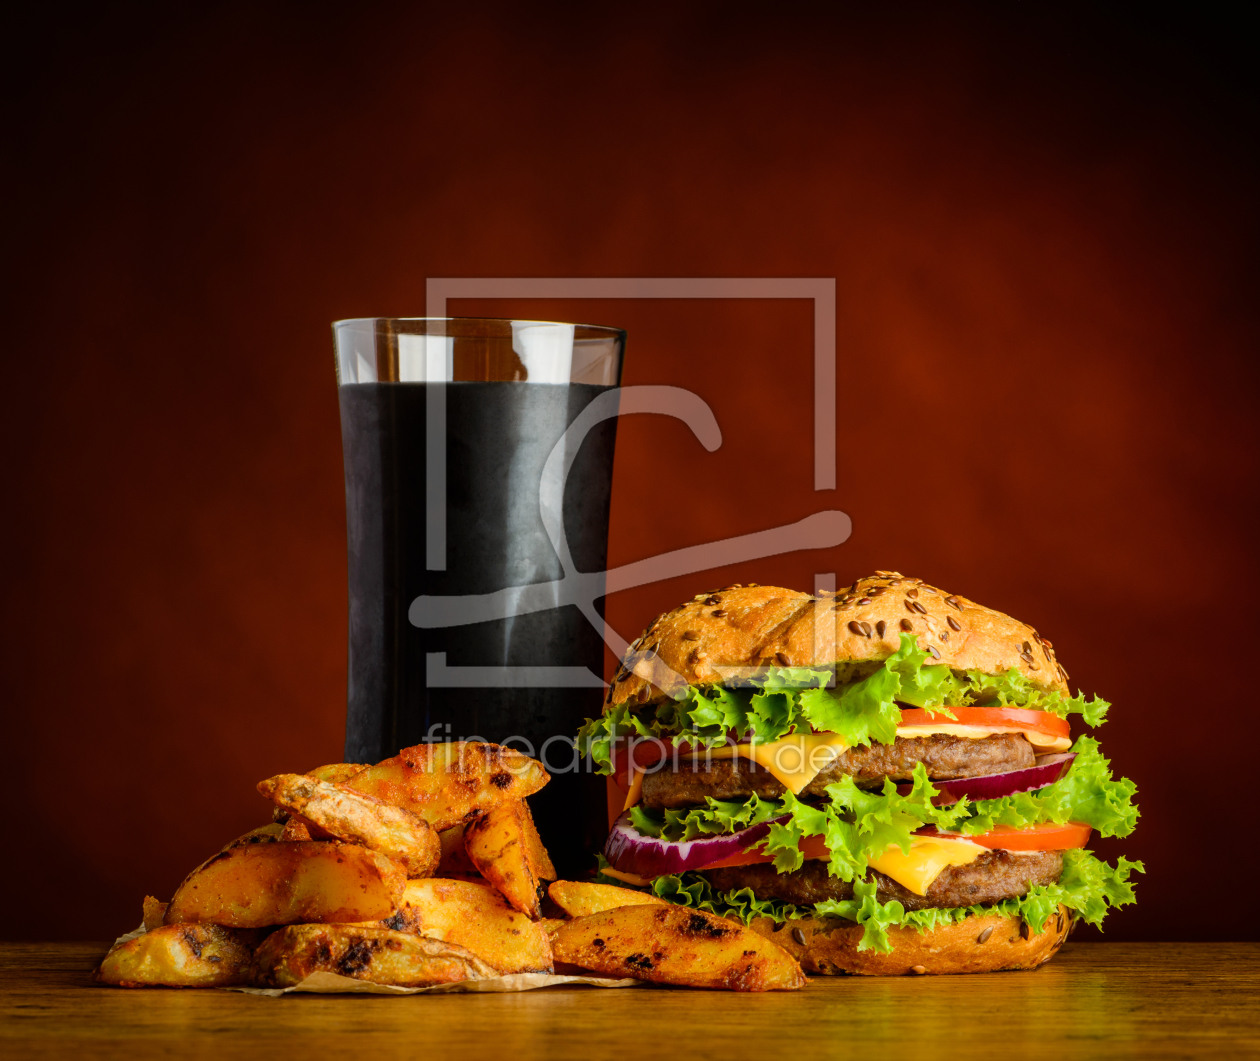 Bild-Nr.: 11820625 Cola mit Burger und Pomes erstellt von xfotostudio